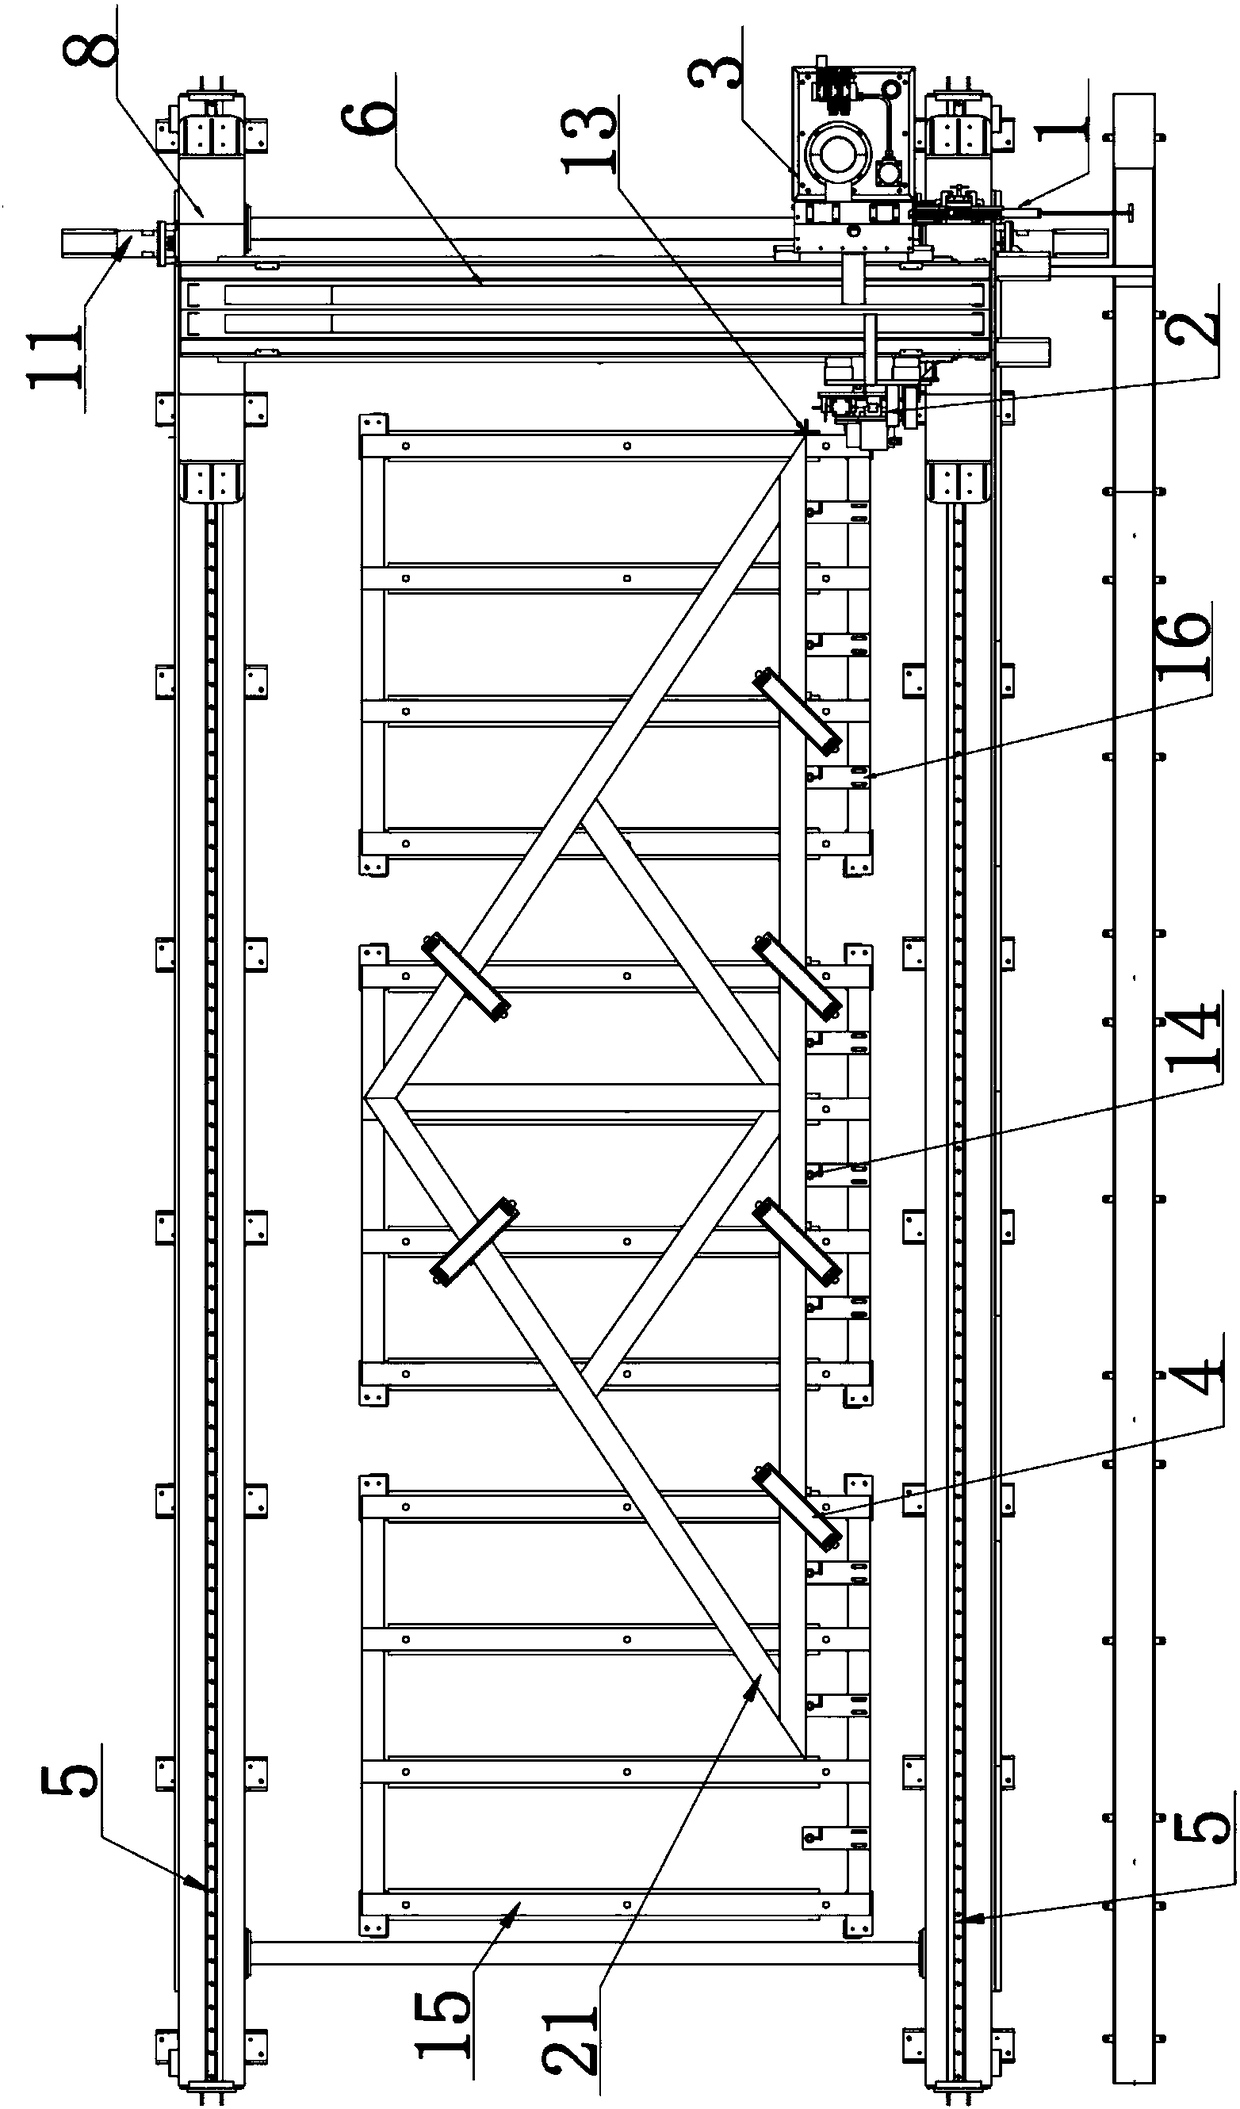 Multi-truss wood truss assembling equipment